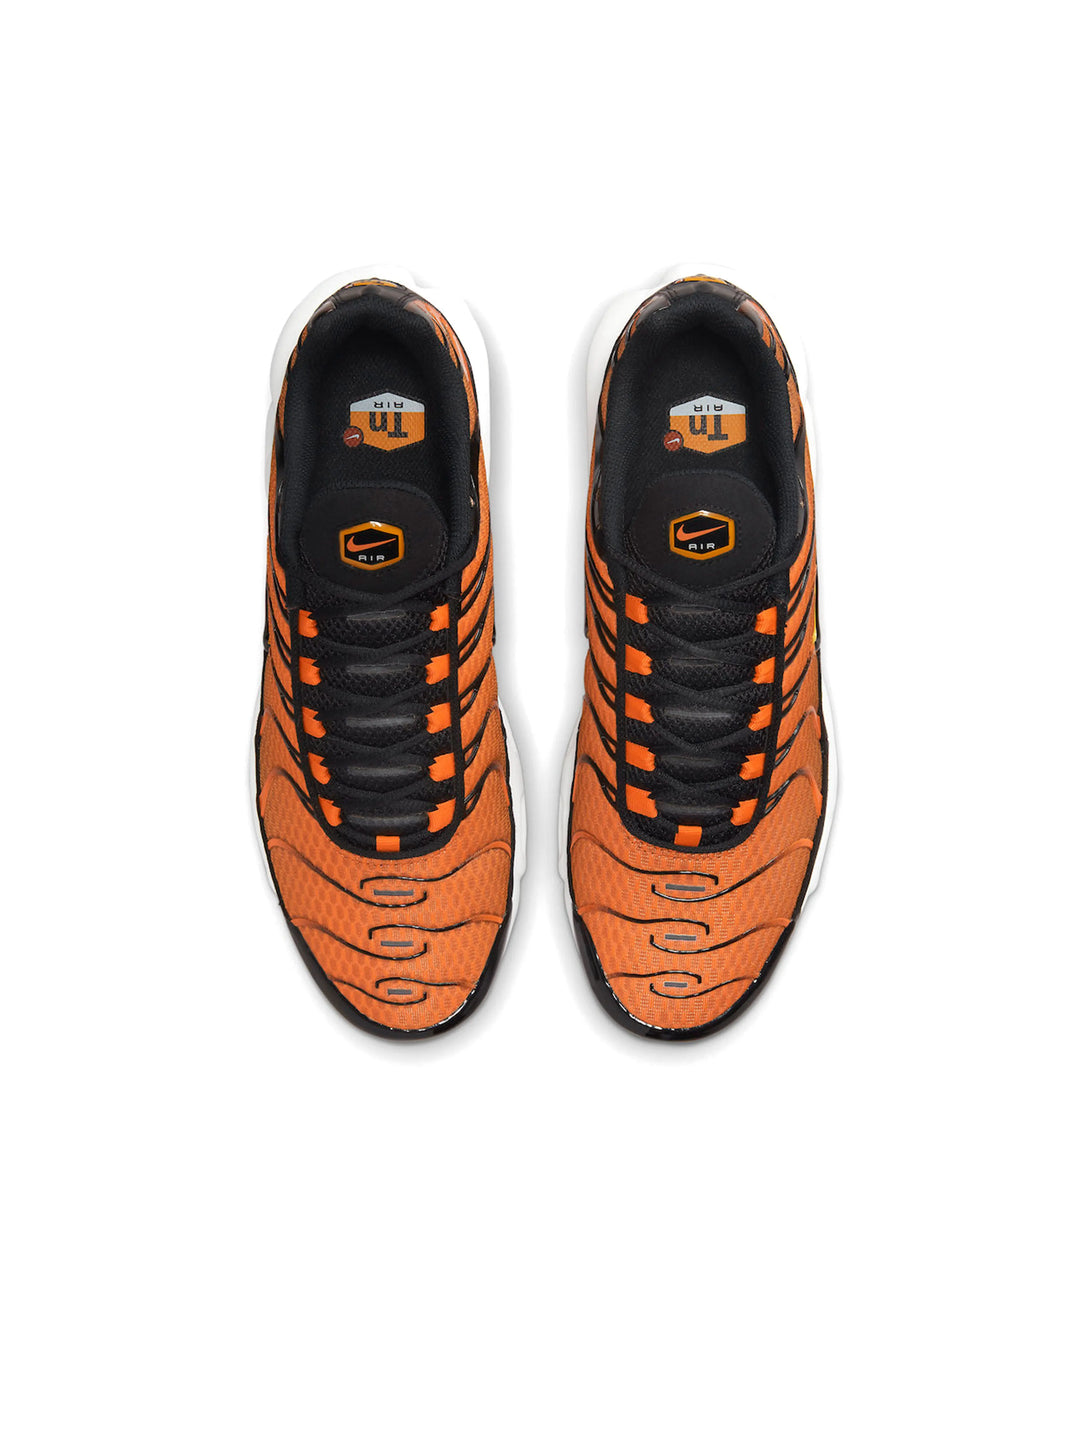 Nike Air Max Plus Tn Orange Black Prior